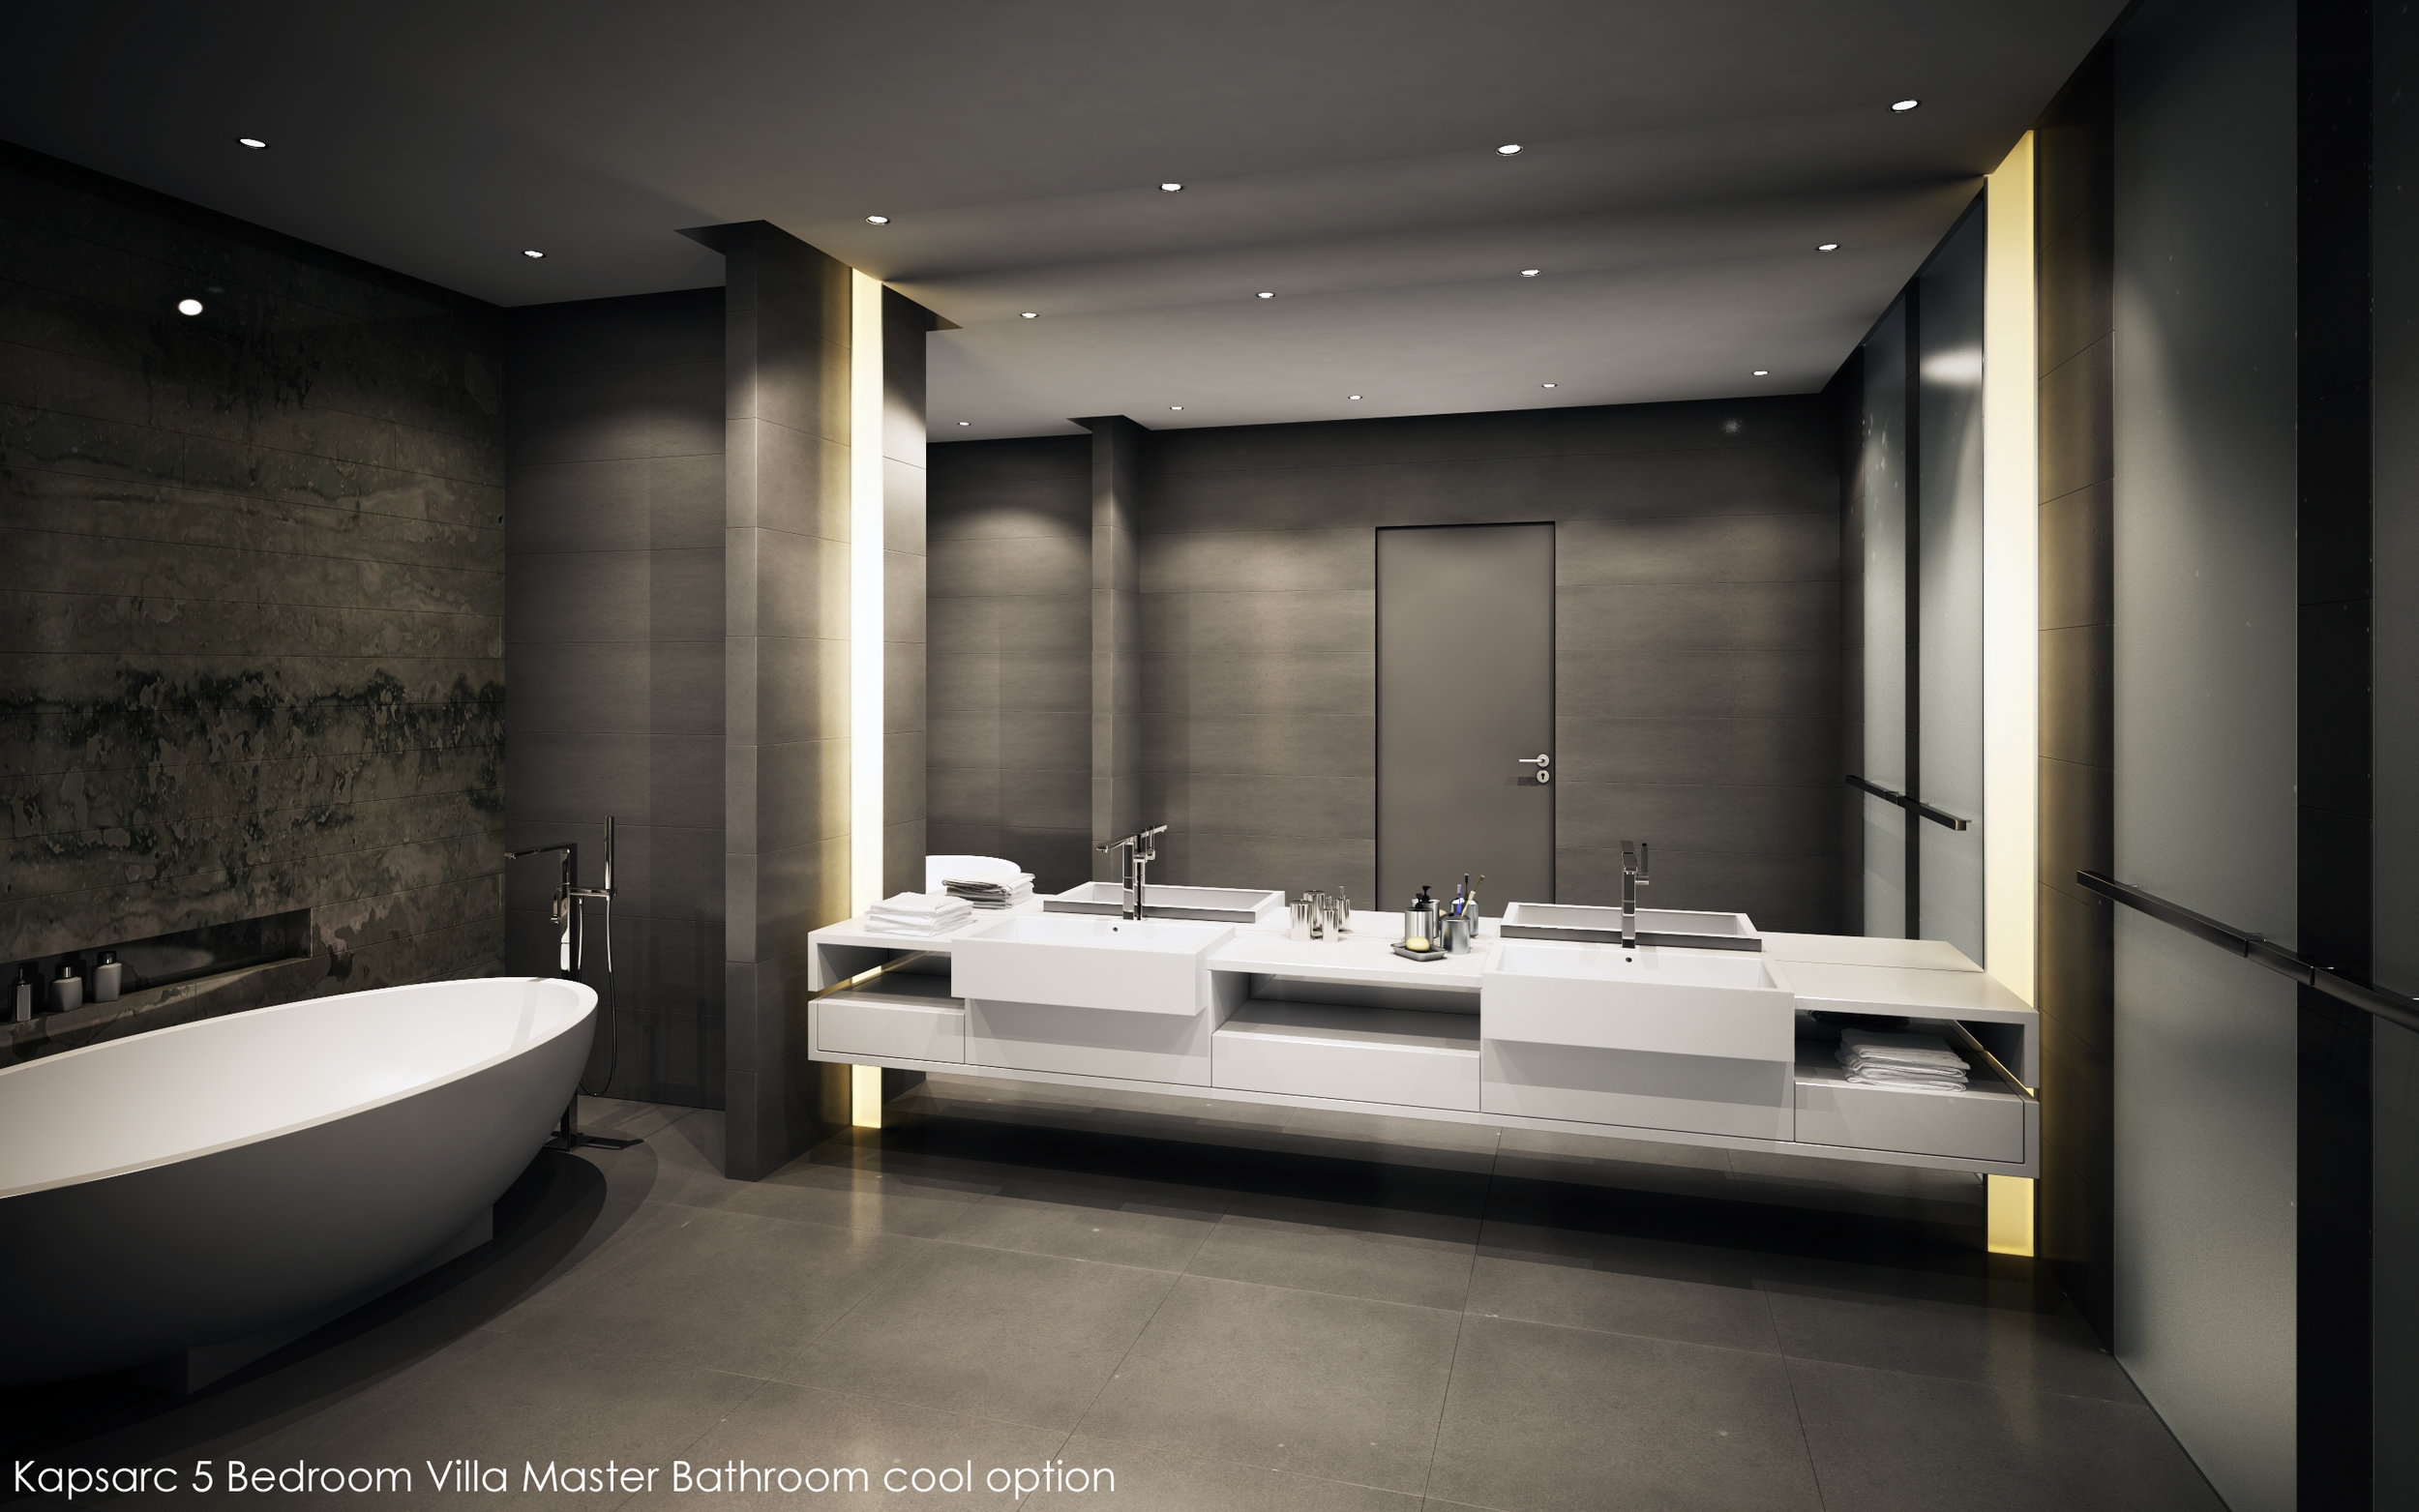 Kapsarc 5 Bedroom Villa Master Bathroom cool option.jpg